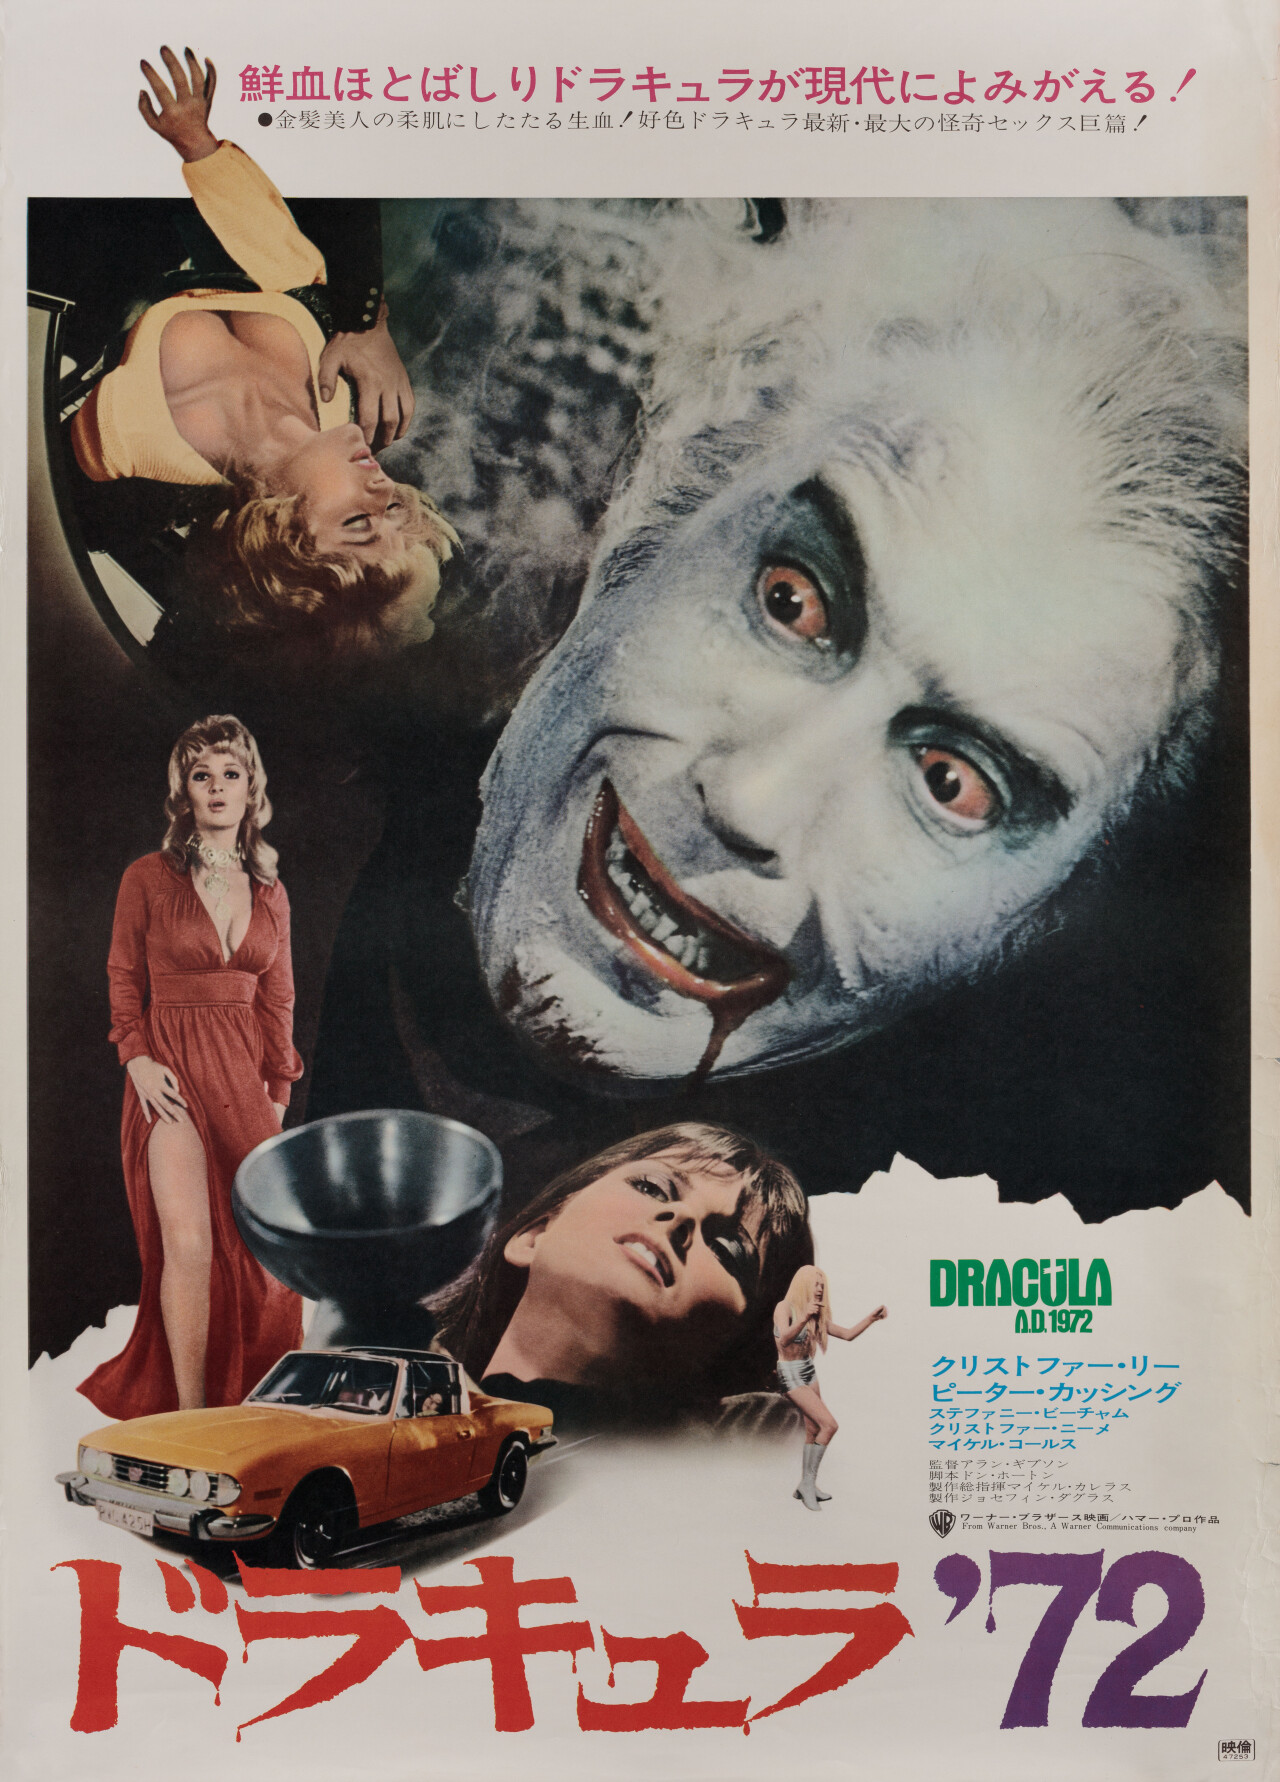 Дракула, 1972 (Dracula A.D. 1972), режиссёр Алан Гибсон, японский постер к фильму (Hummer horror, 1972 год)